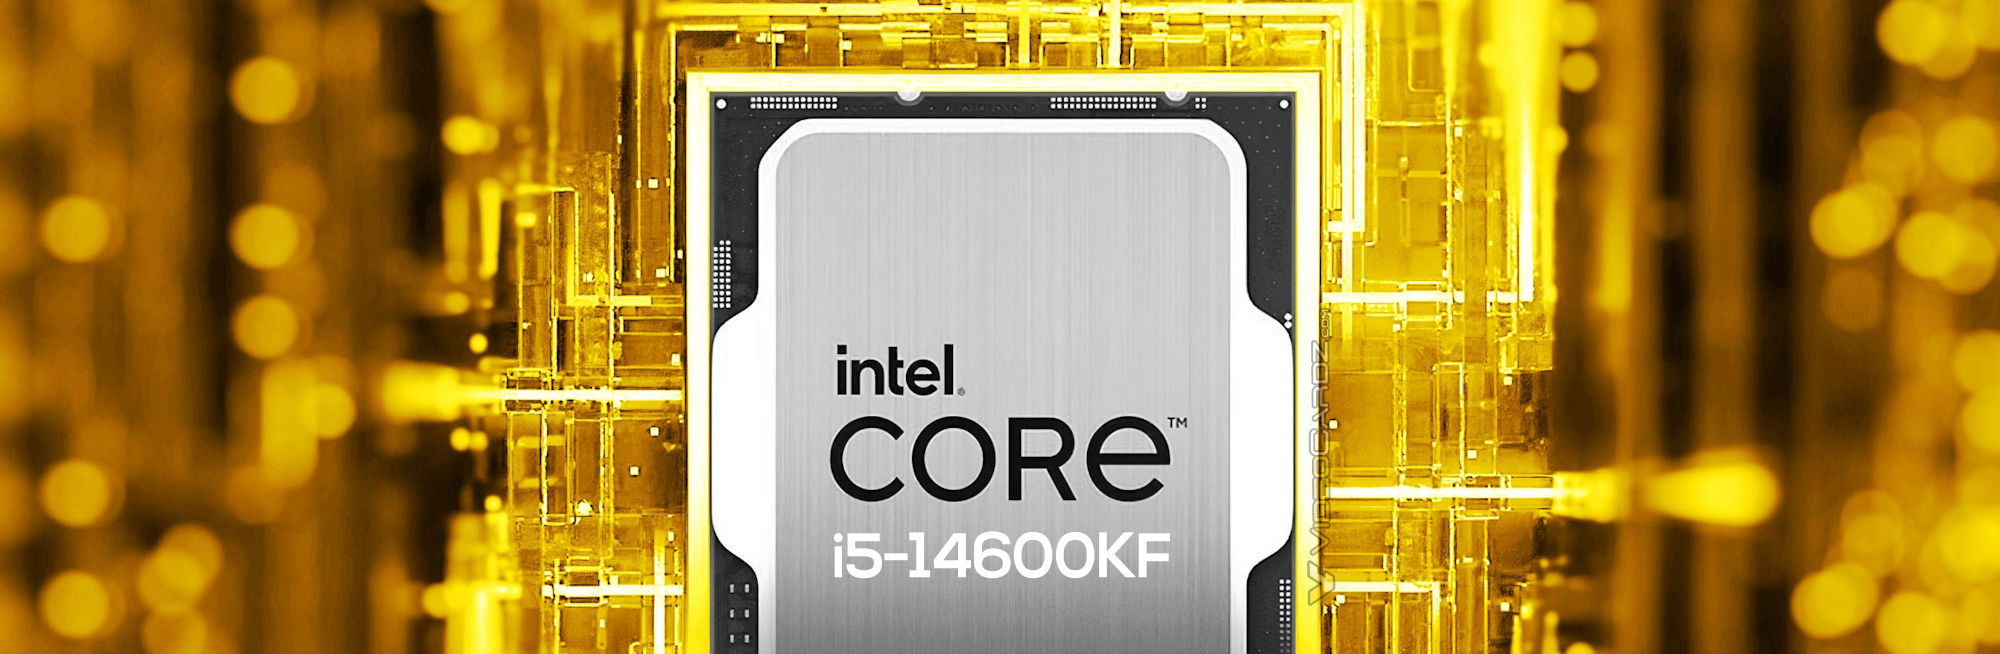 Intel Core I5-14600kf Desktop Processor 14 Cores 5.3 GHz